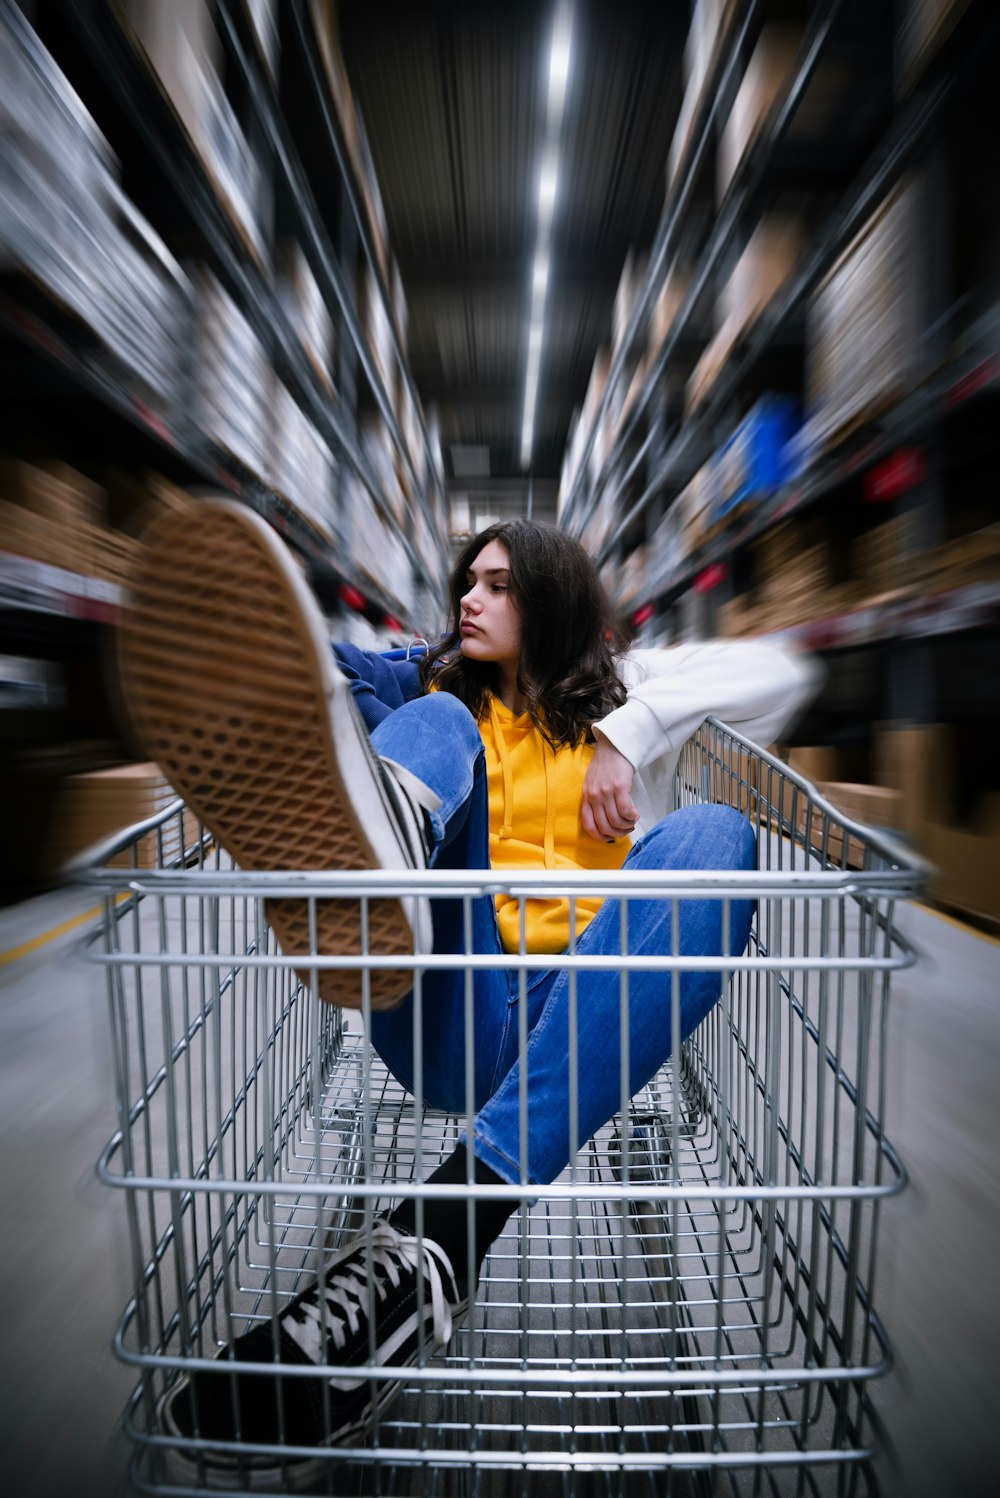 fotografia selettiva di donna che cavalca il carrello della spesa in magazzino